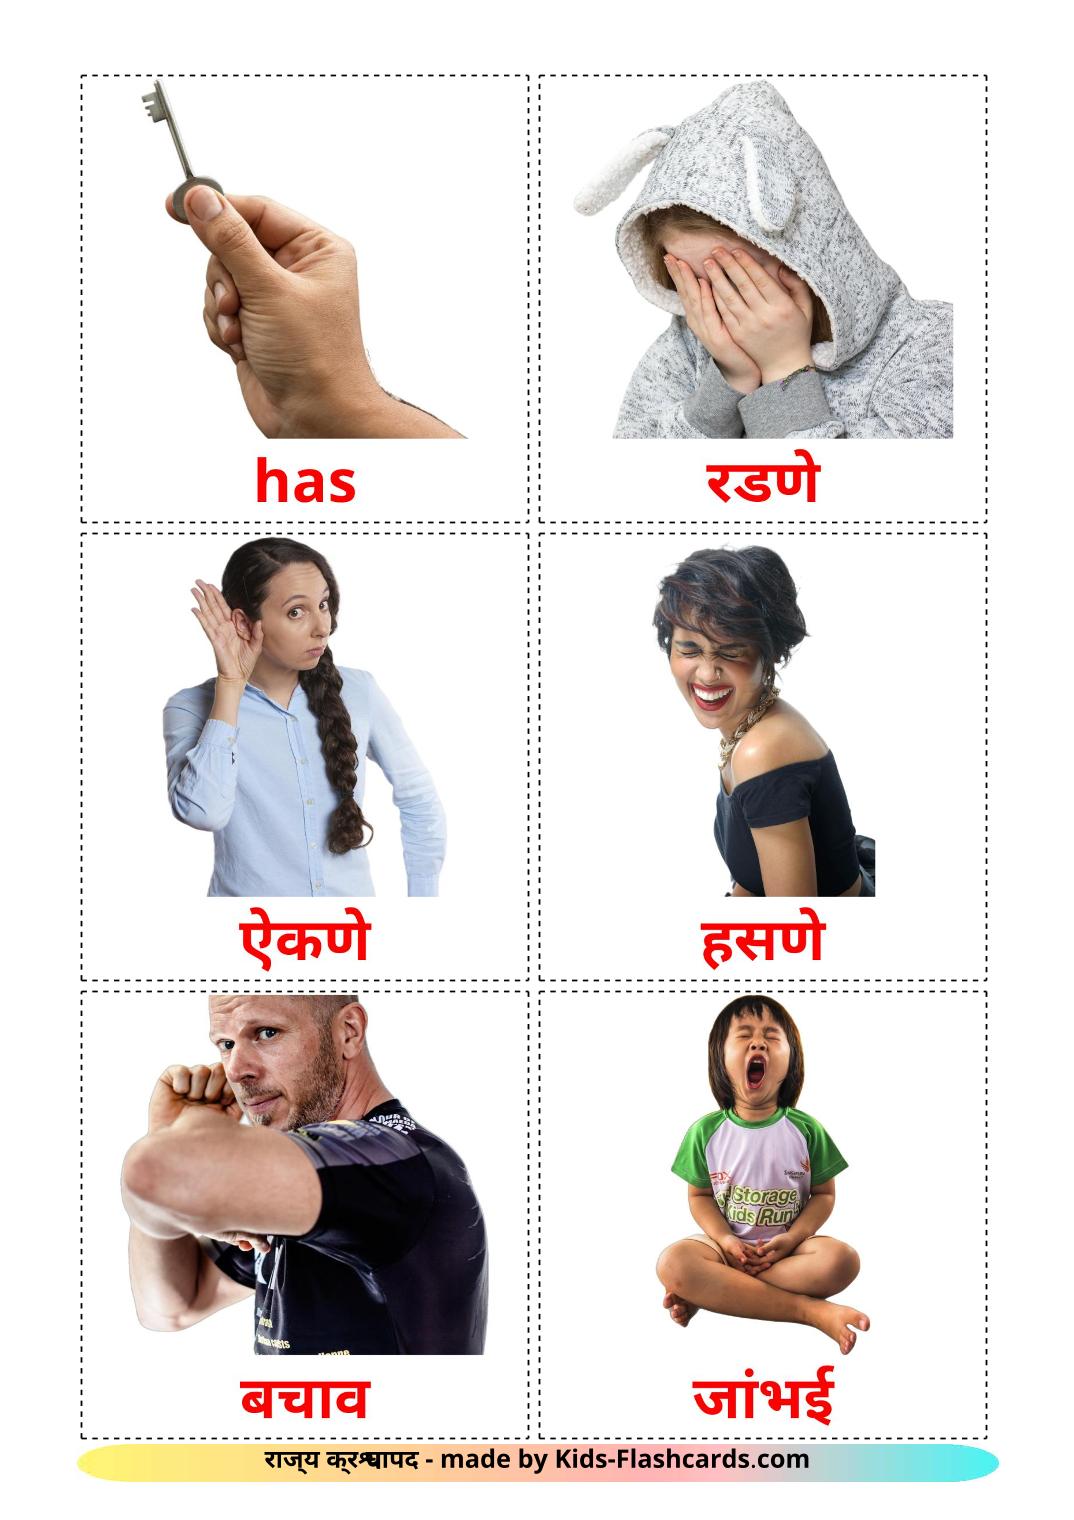 Verbos estatales - 23 fichas de marathi para imprimir gratis 